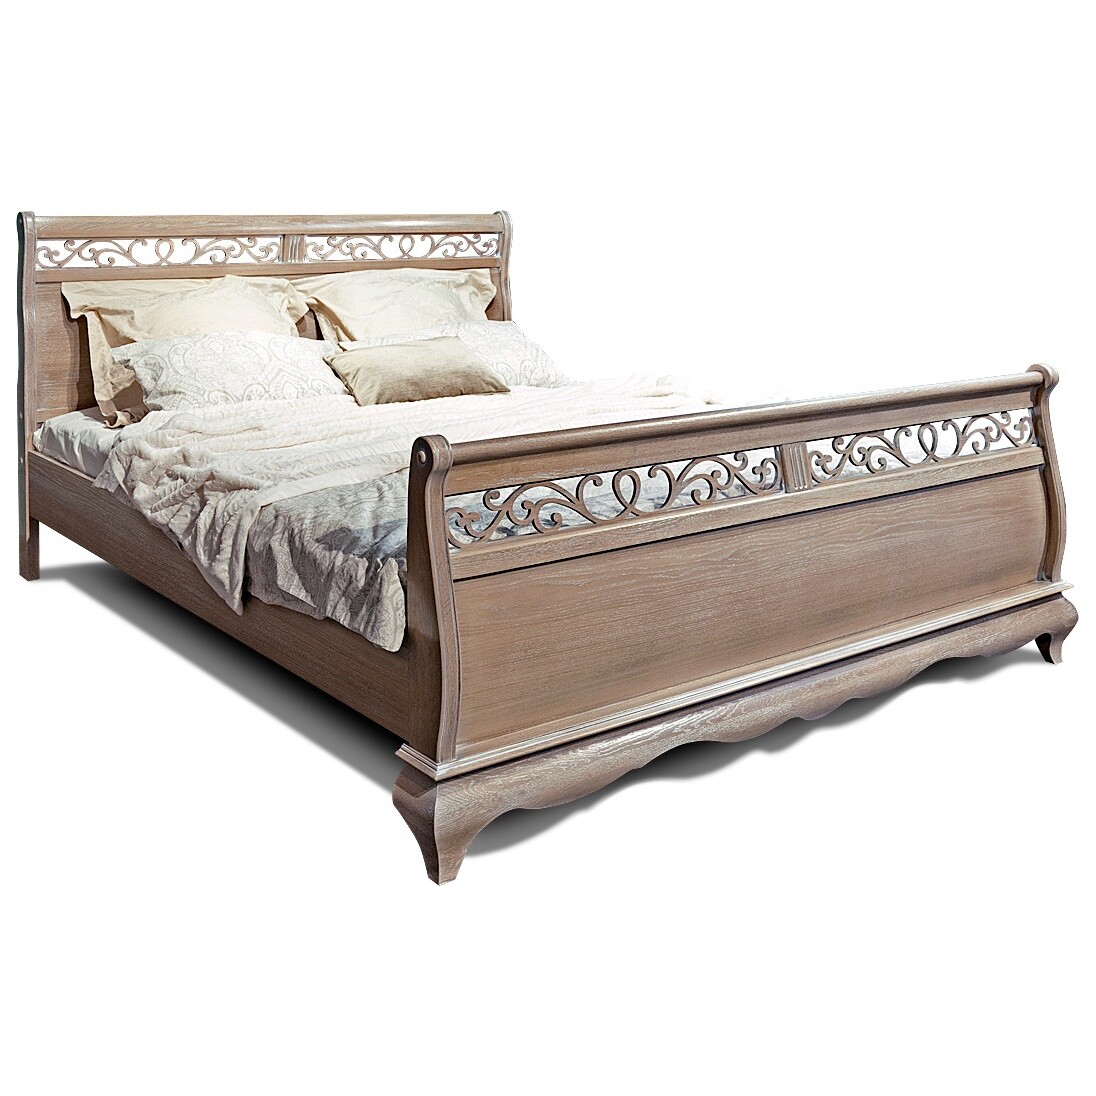 Кровать двуспальная с высоким изножьем 160х220 см амбэр с белой патиной &quot;Оскар&quot;